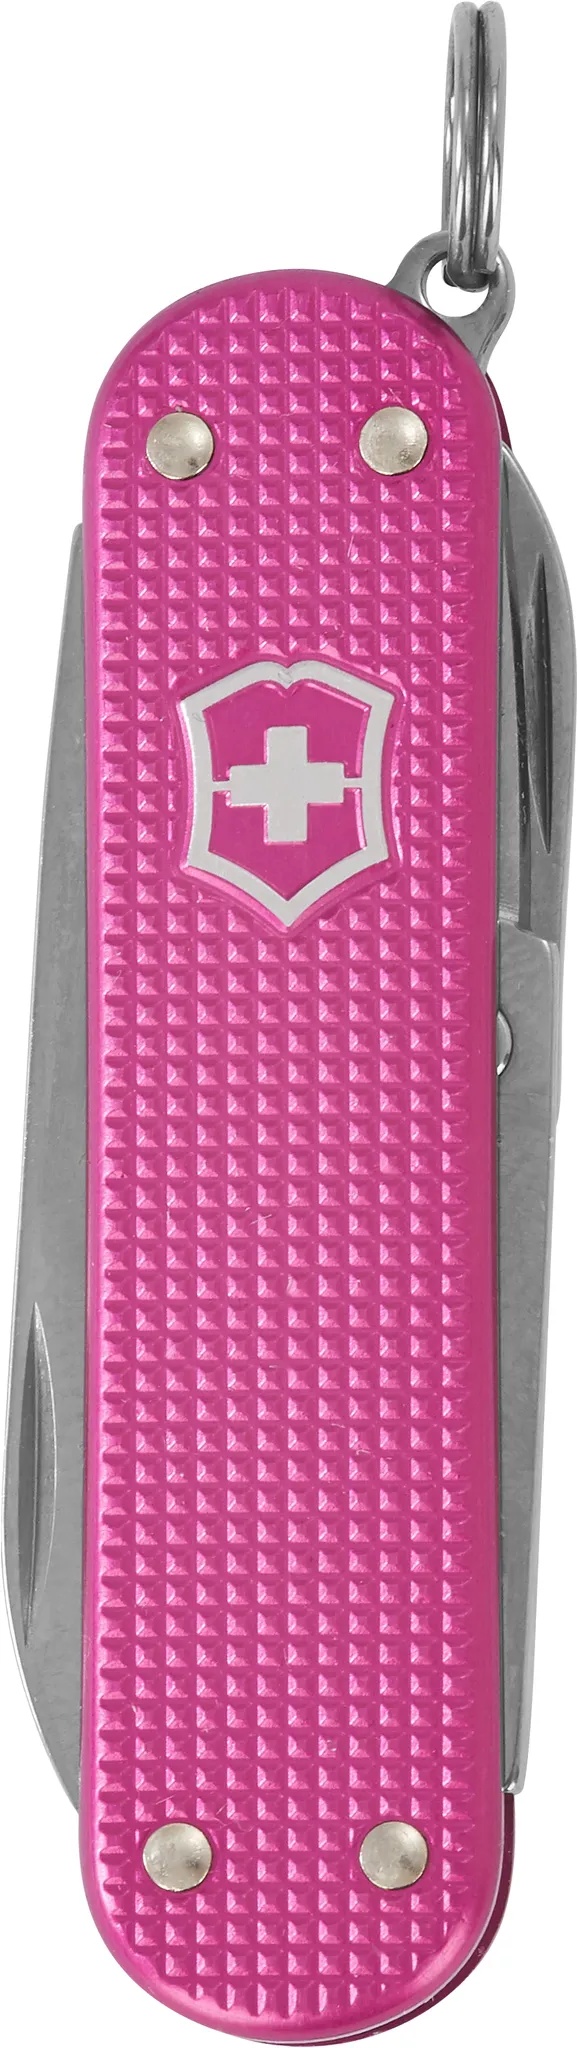 Schweizer Taschenmesser, Faltschachte, Länge 58mm, Kariert